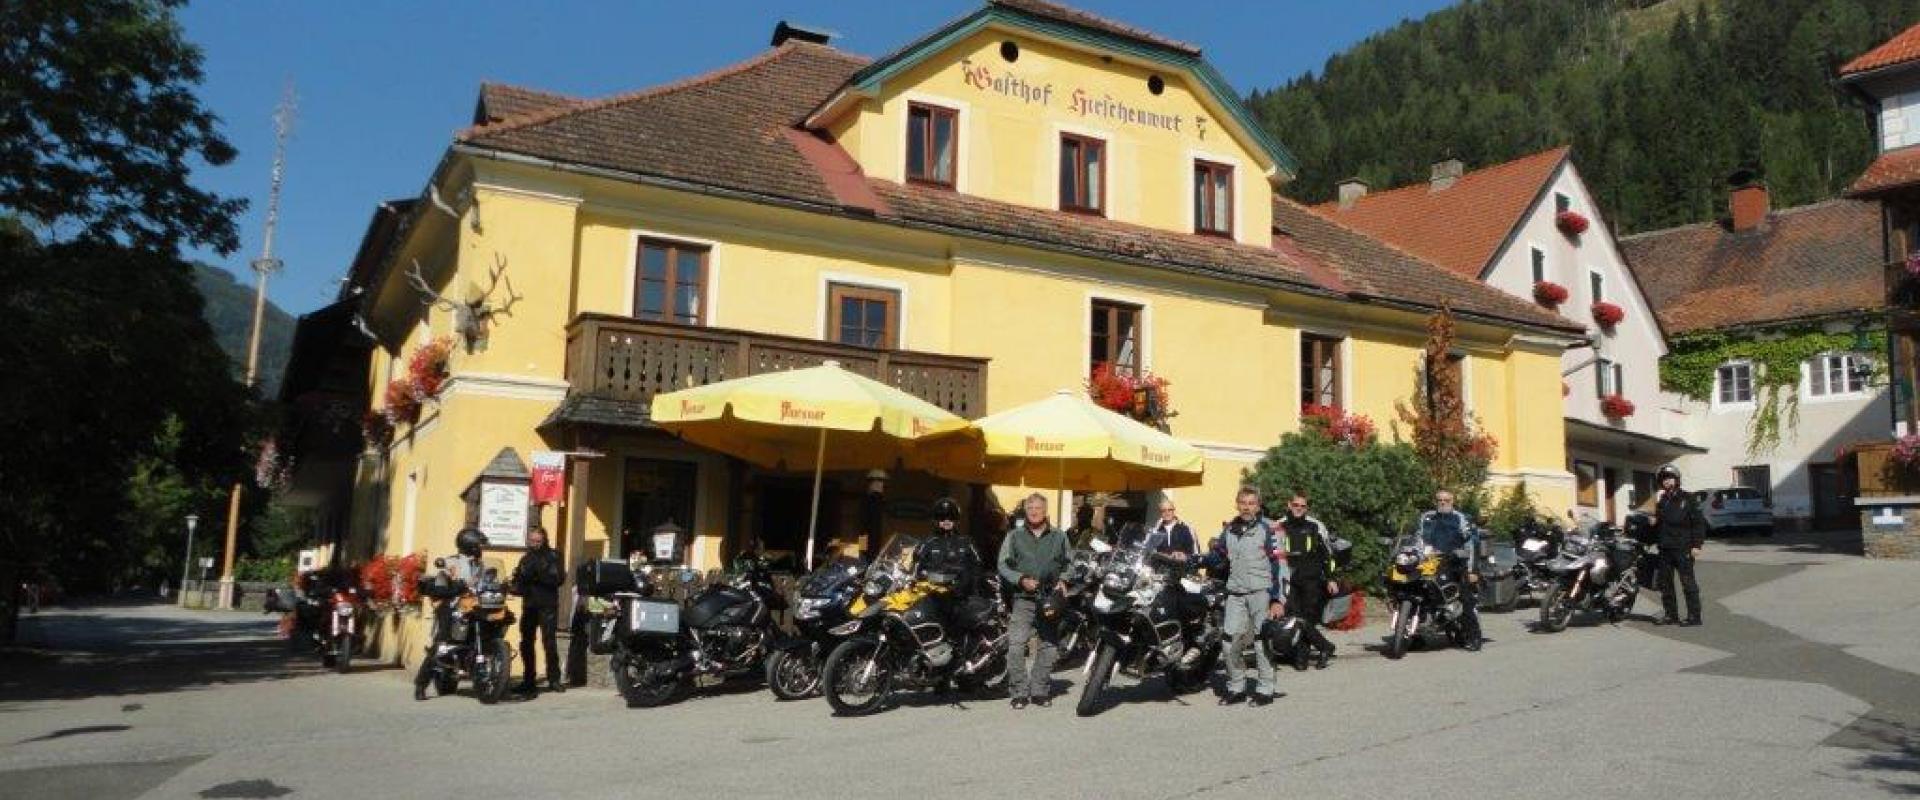 15748 Motorrad Hotel Hirschenwirt in der Steiermark.jpg